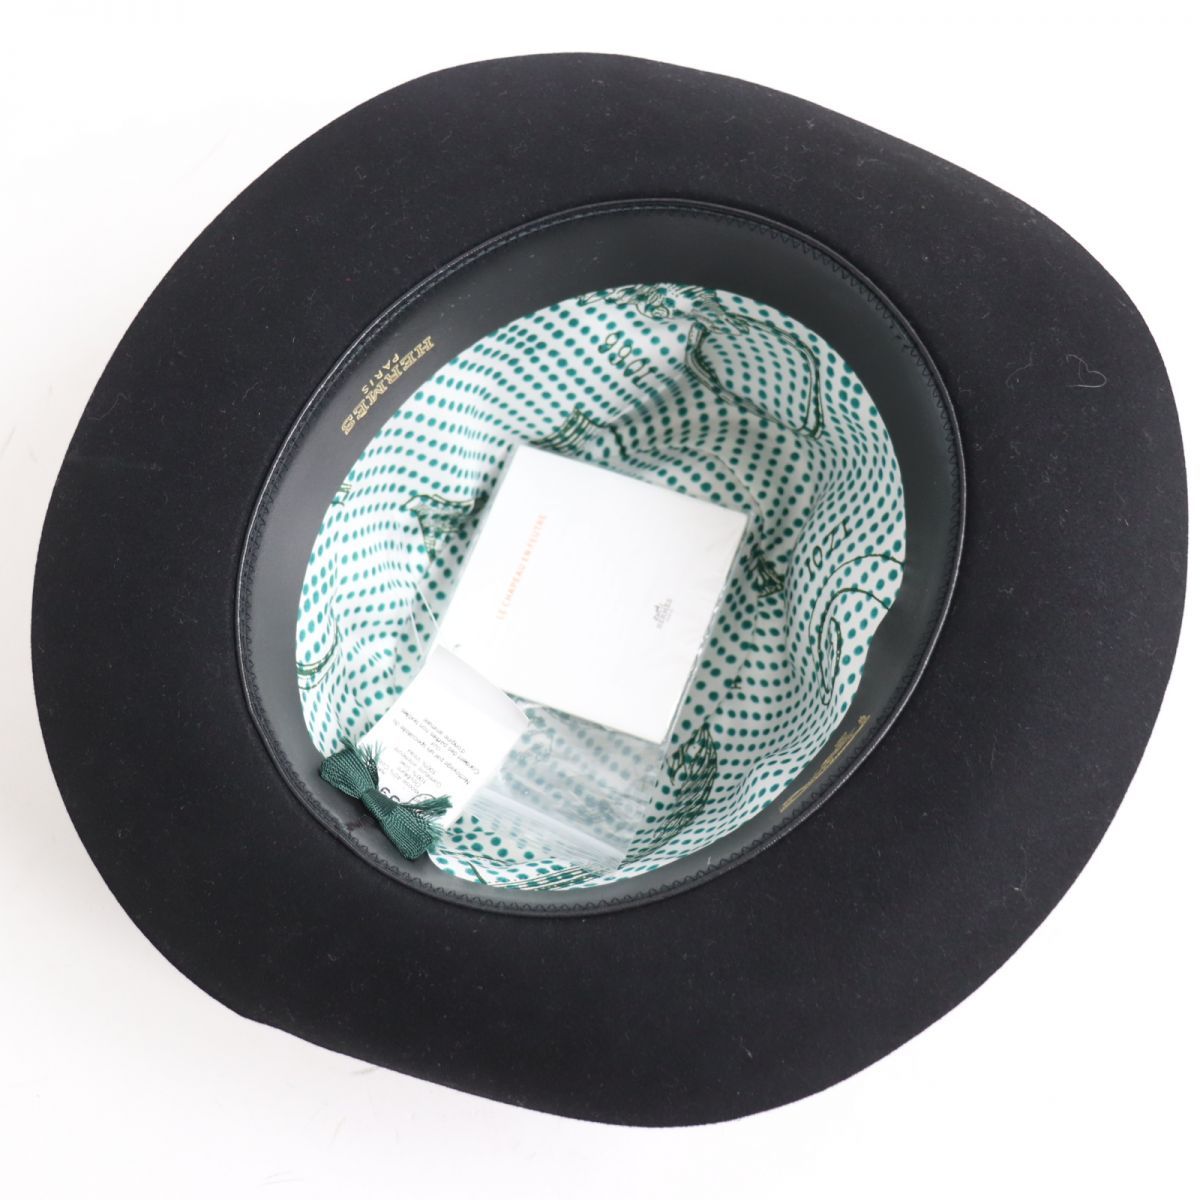 極美品◆HERMES エルメス ラパンフェルト レザー使い 中折れハット/帽子 ブラック 59 メンズ イタリア製 正規品